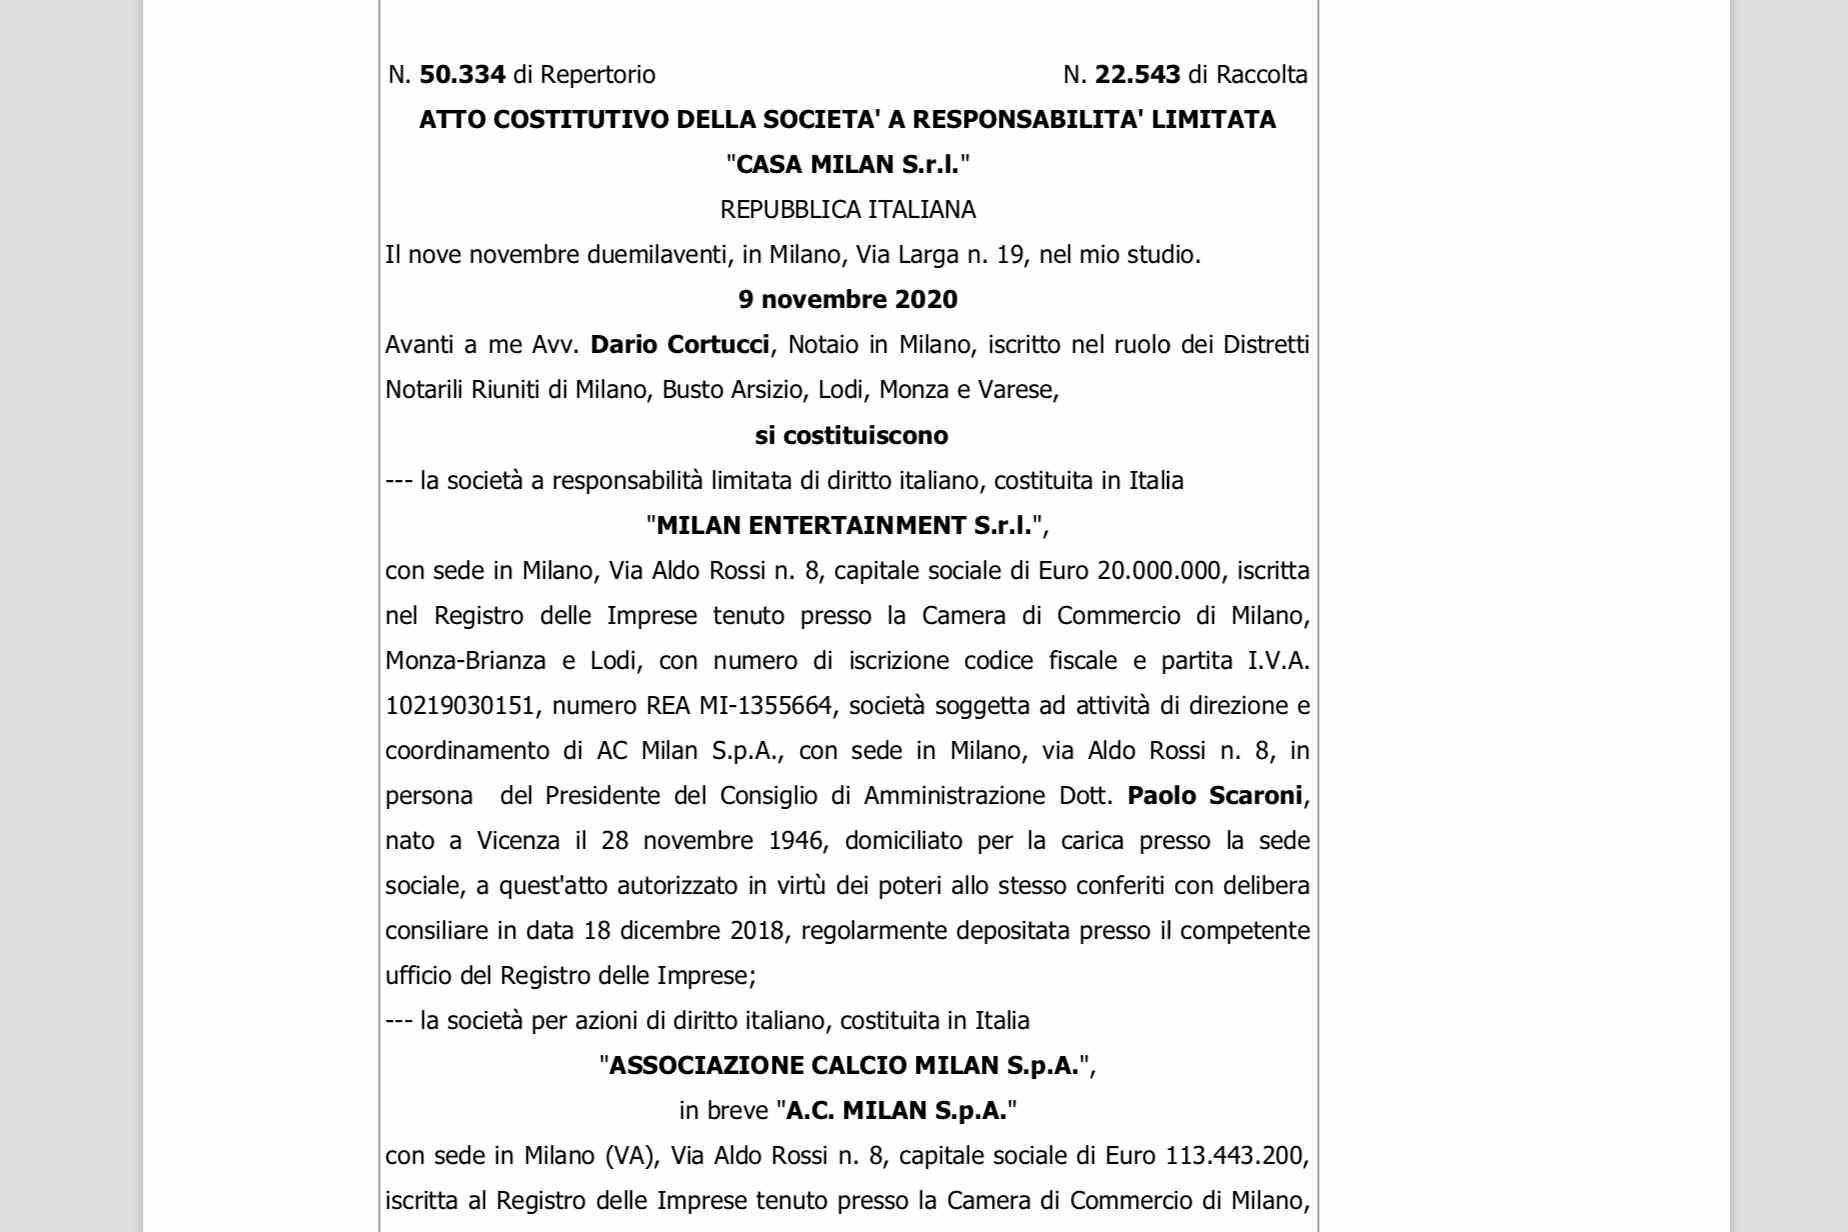 Il Milan si compra Casa Milan: l'atto costitutivo di Casa Milan srl